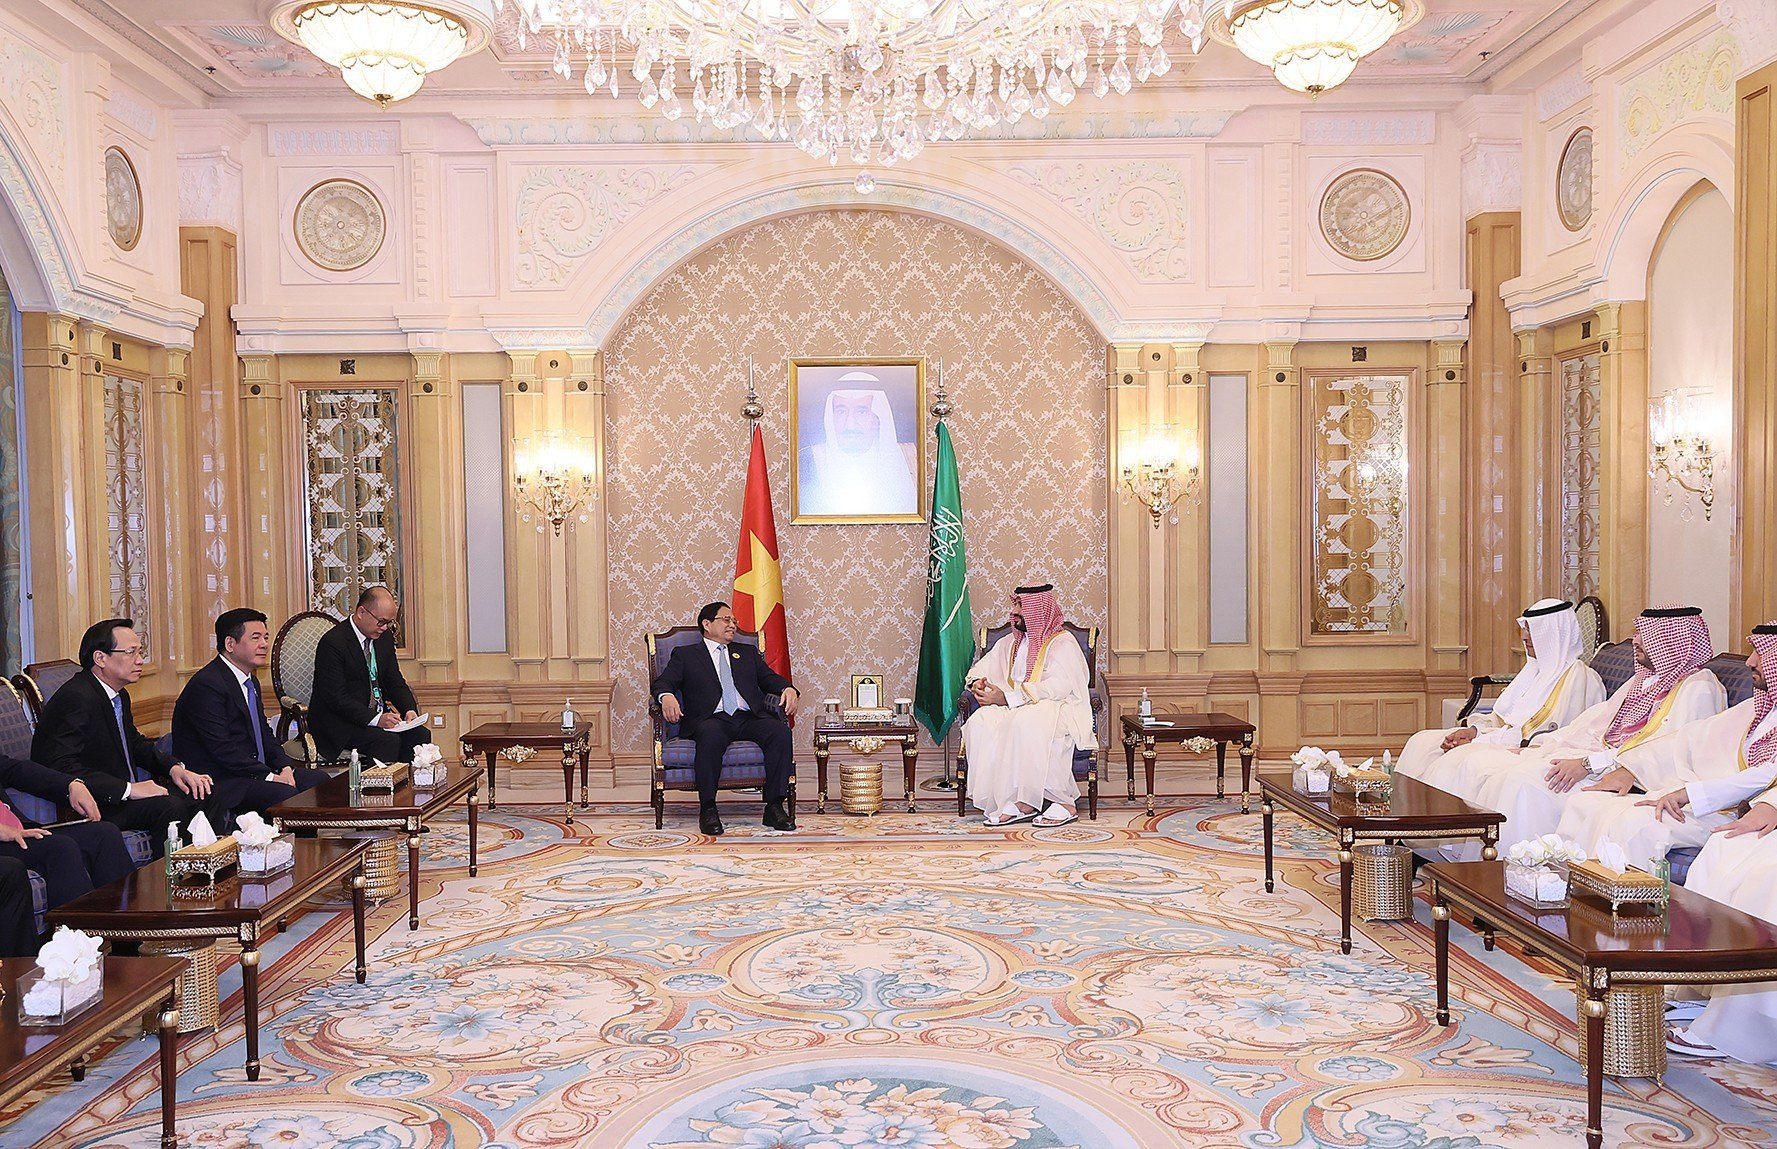 Thủ tướng Phạm Minh Chính hội đàm với Hoàng Thái tử, Thủ tướng Saudi Arabia - Ảnh 3.